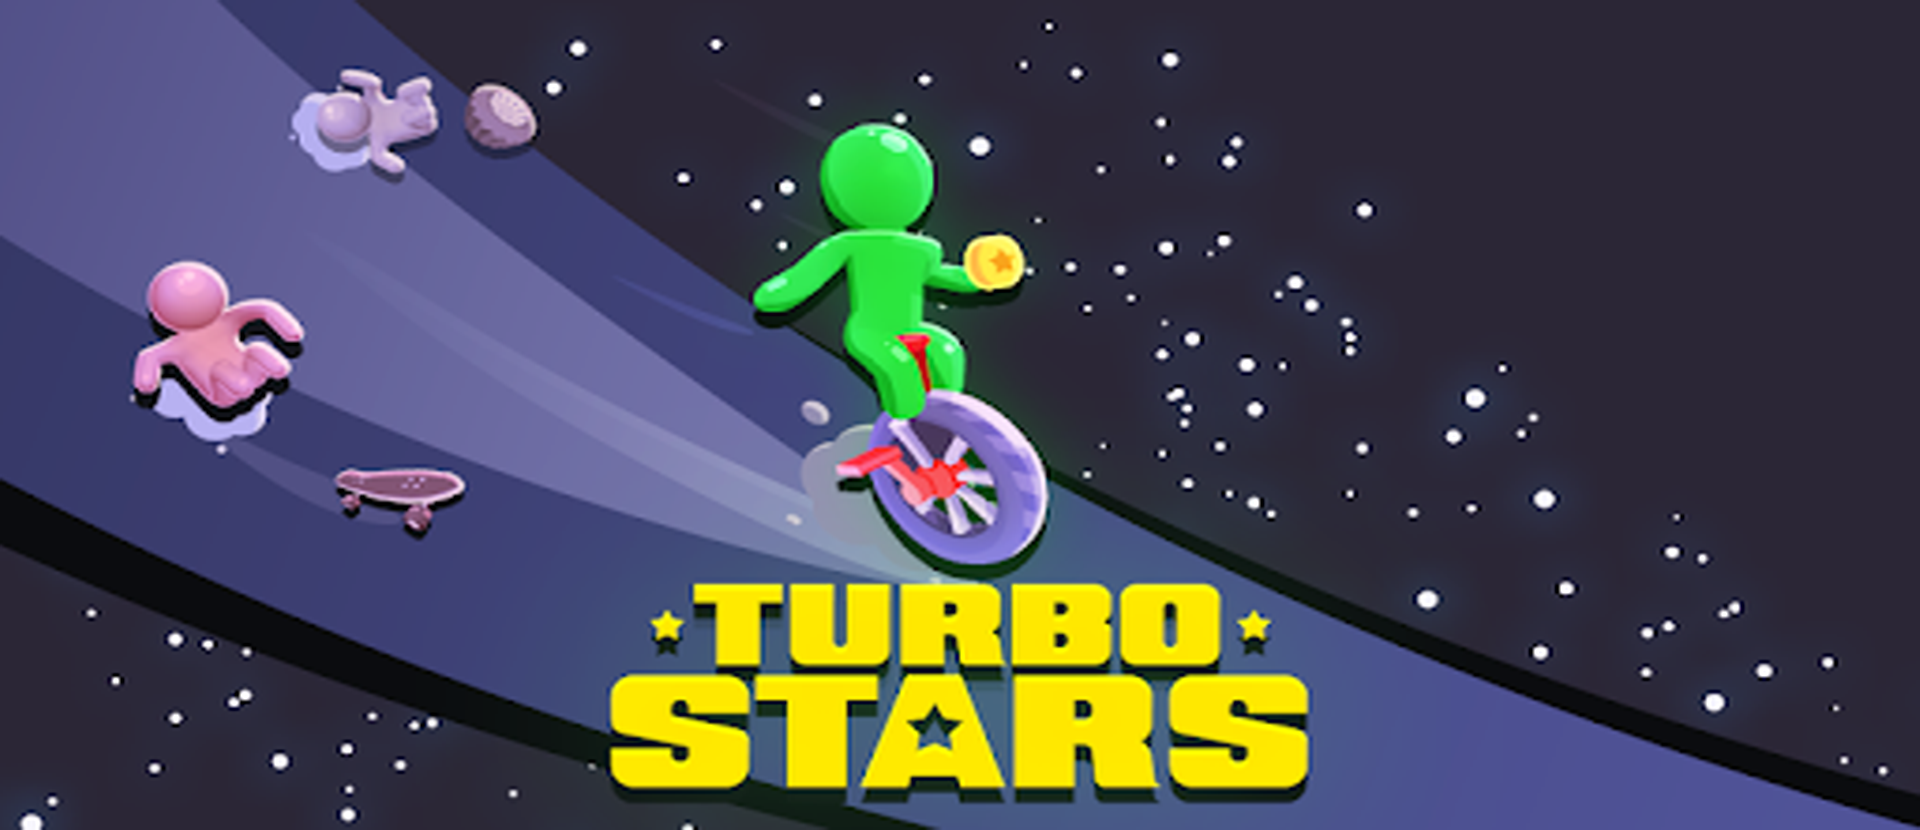 터보 스타즈 - Turbo Stars PC 버전, 컴퓨터에서 설치하고 안전하게 즐기자 - 녹스 앱플레이어